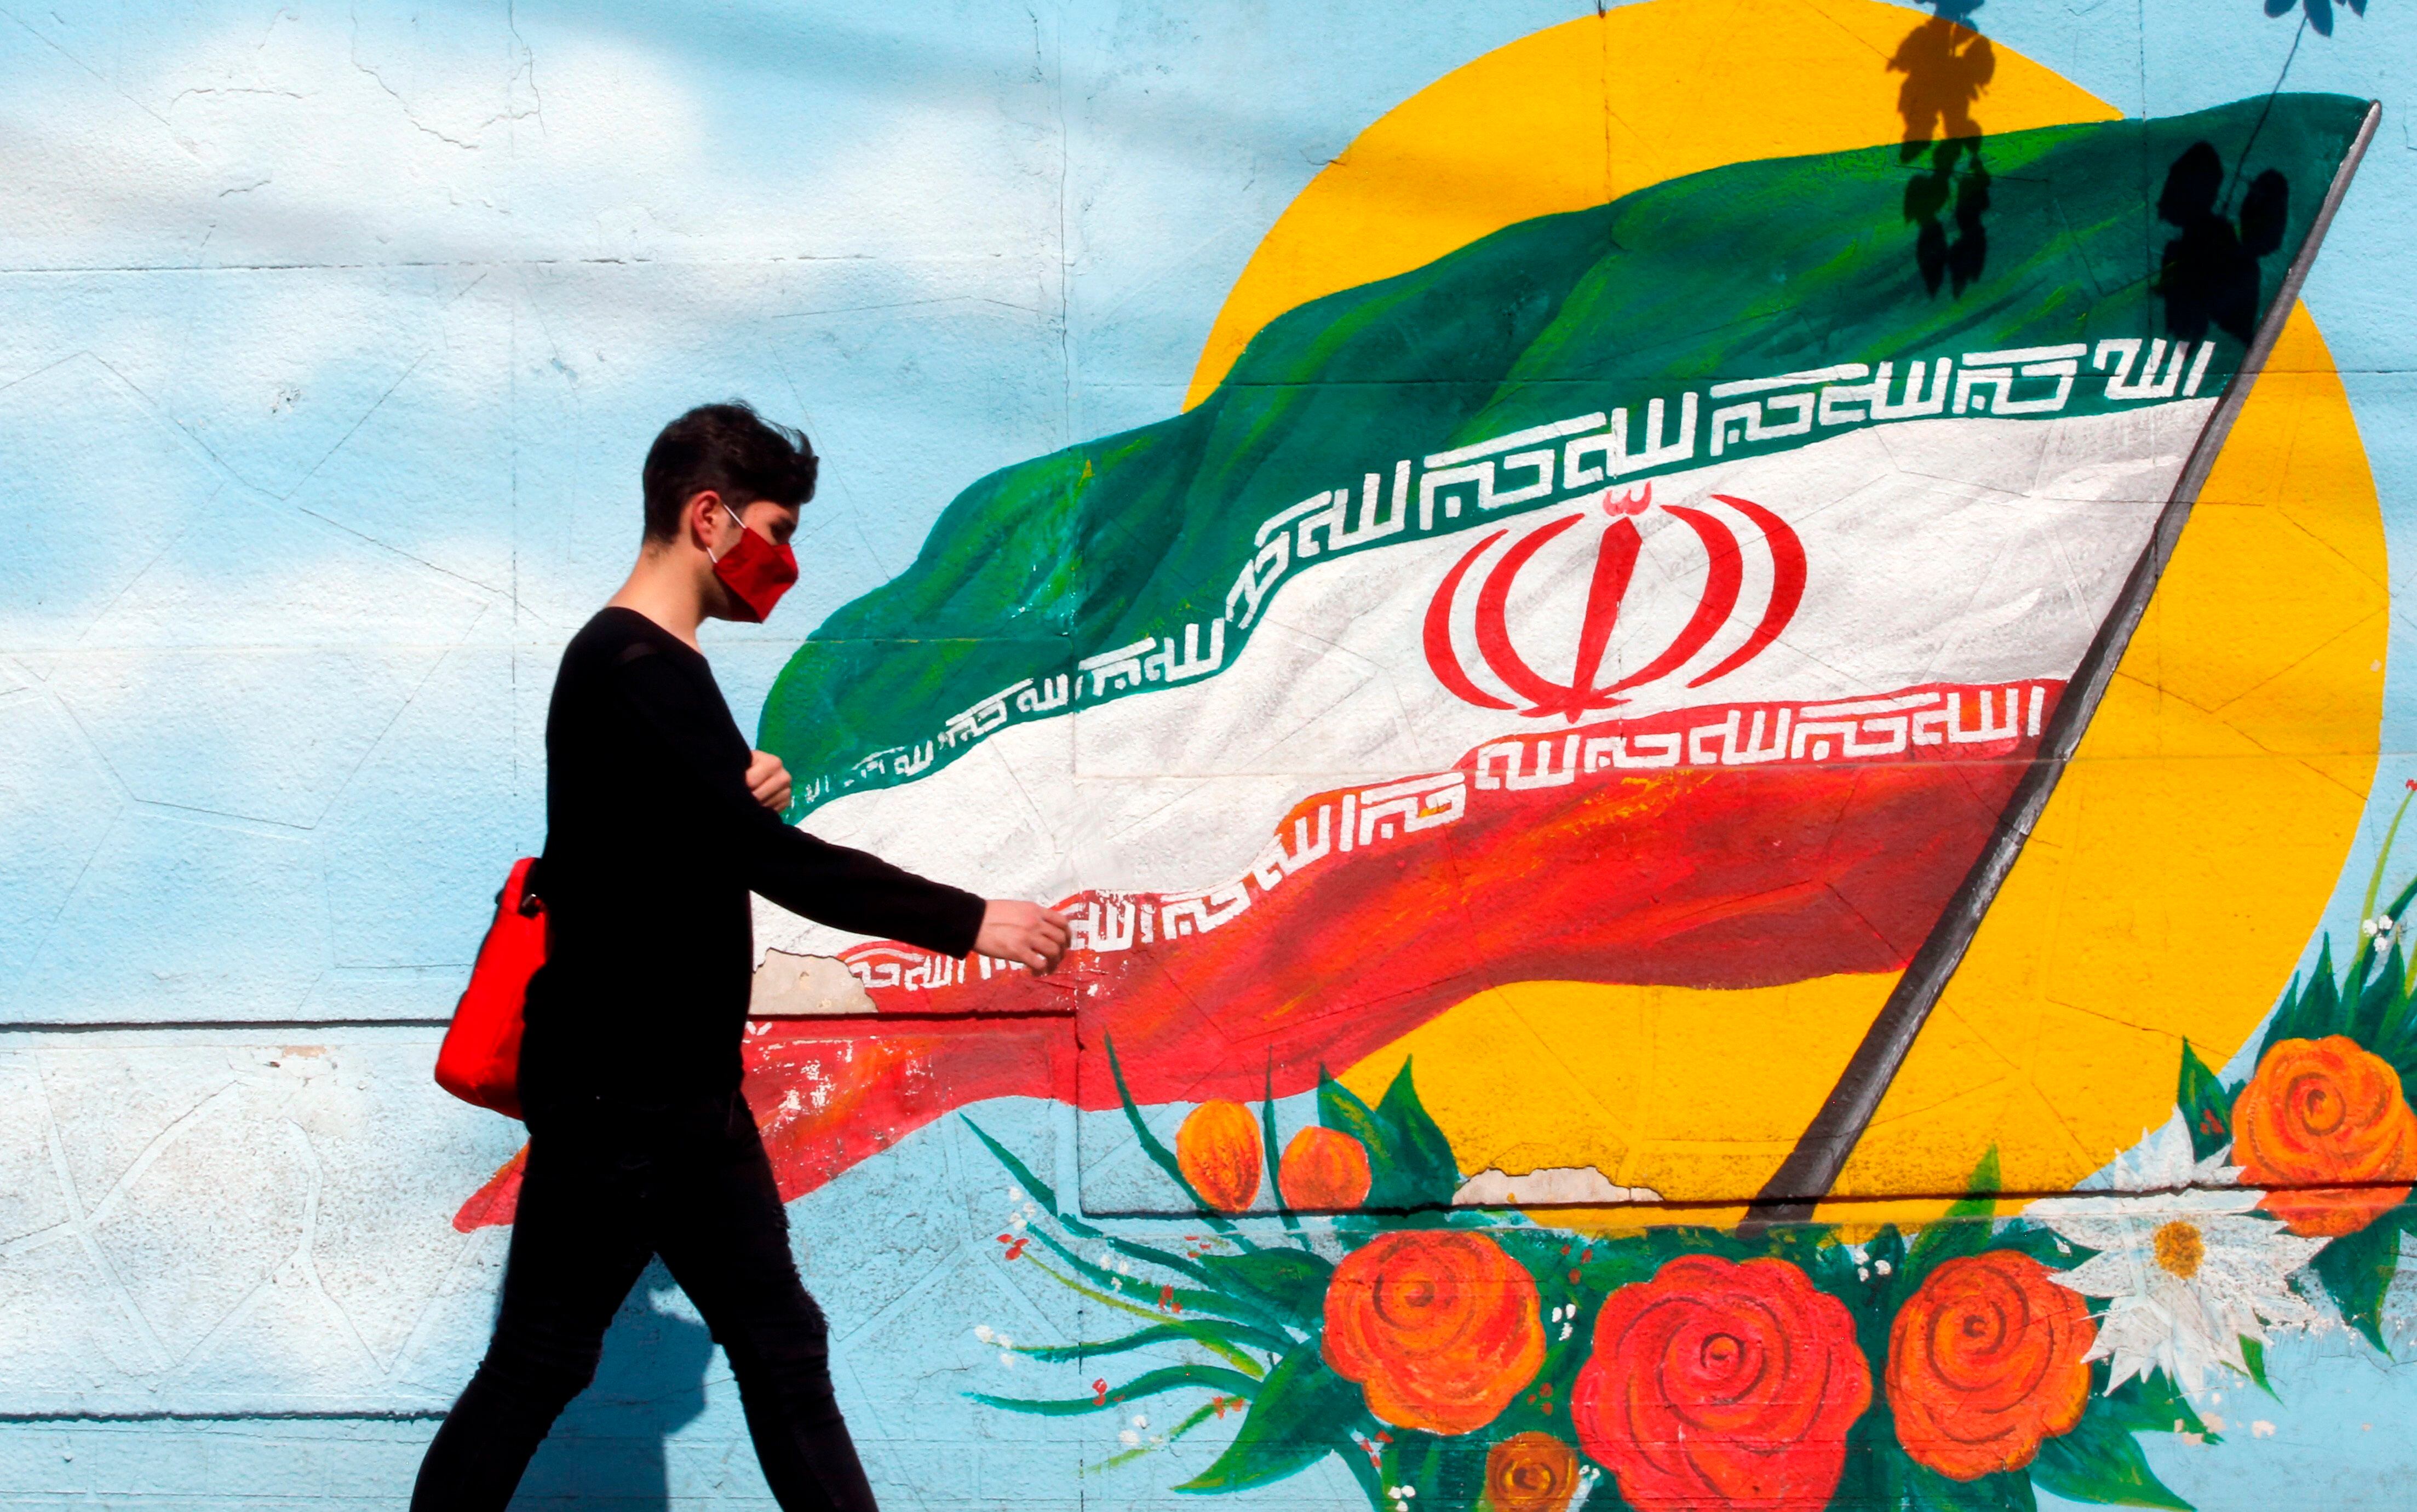 -FOTODELDÍA- TEHERÁN (IRÁN), 17/06/2021.- Un joven camina frente a un mural pintado con la bandera nacional iraní, este jueves en Teherán (Irán). Más de 59 millones de iraníes están llamados mañana a las urnas para elegir un nuevo presidente, en unos comicios marcados por una presencia mayoritaria de candidatos conservadores y en los que está en juego la participación. EFE/ Abedin Taherkenareh
